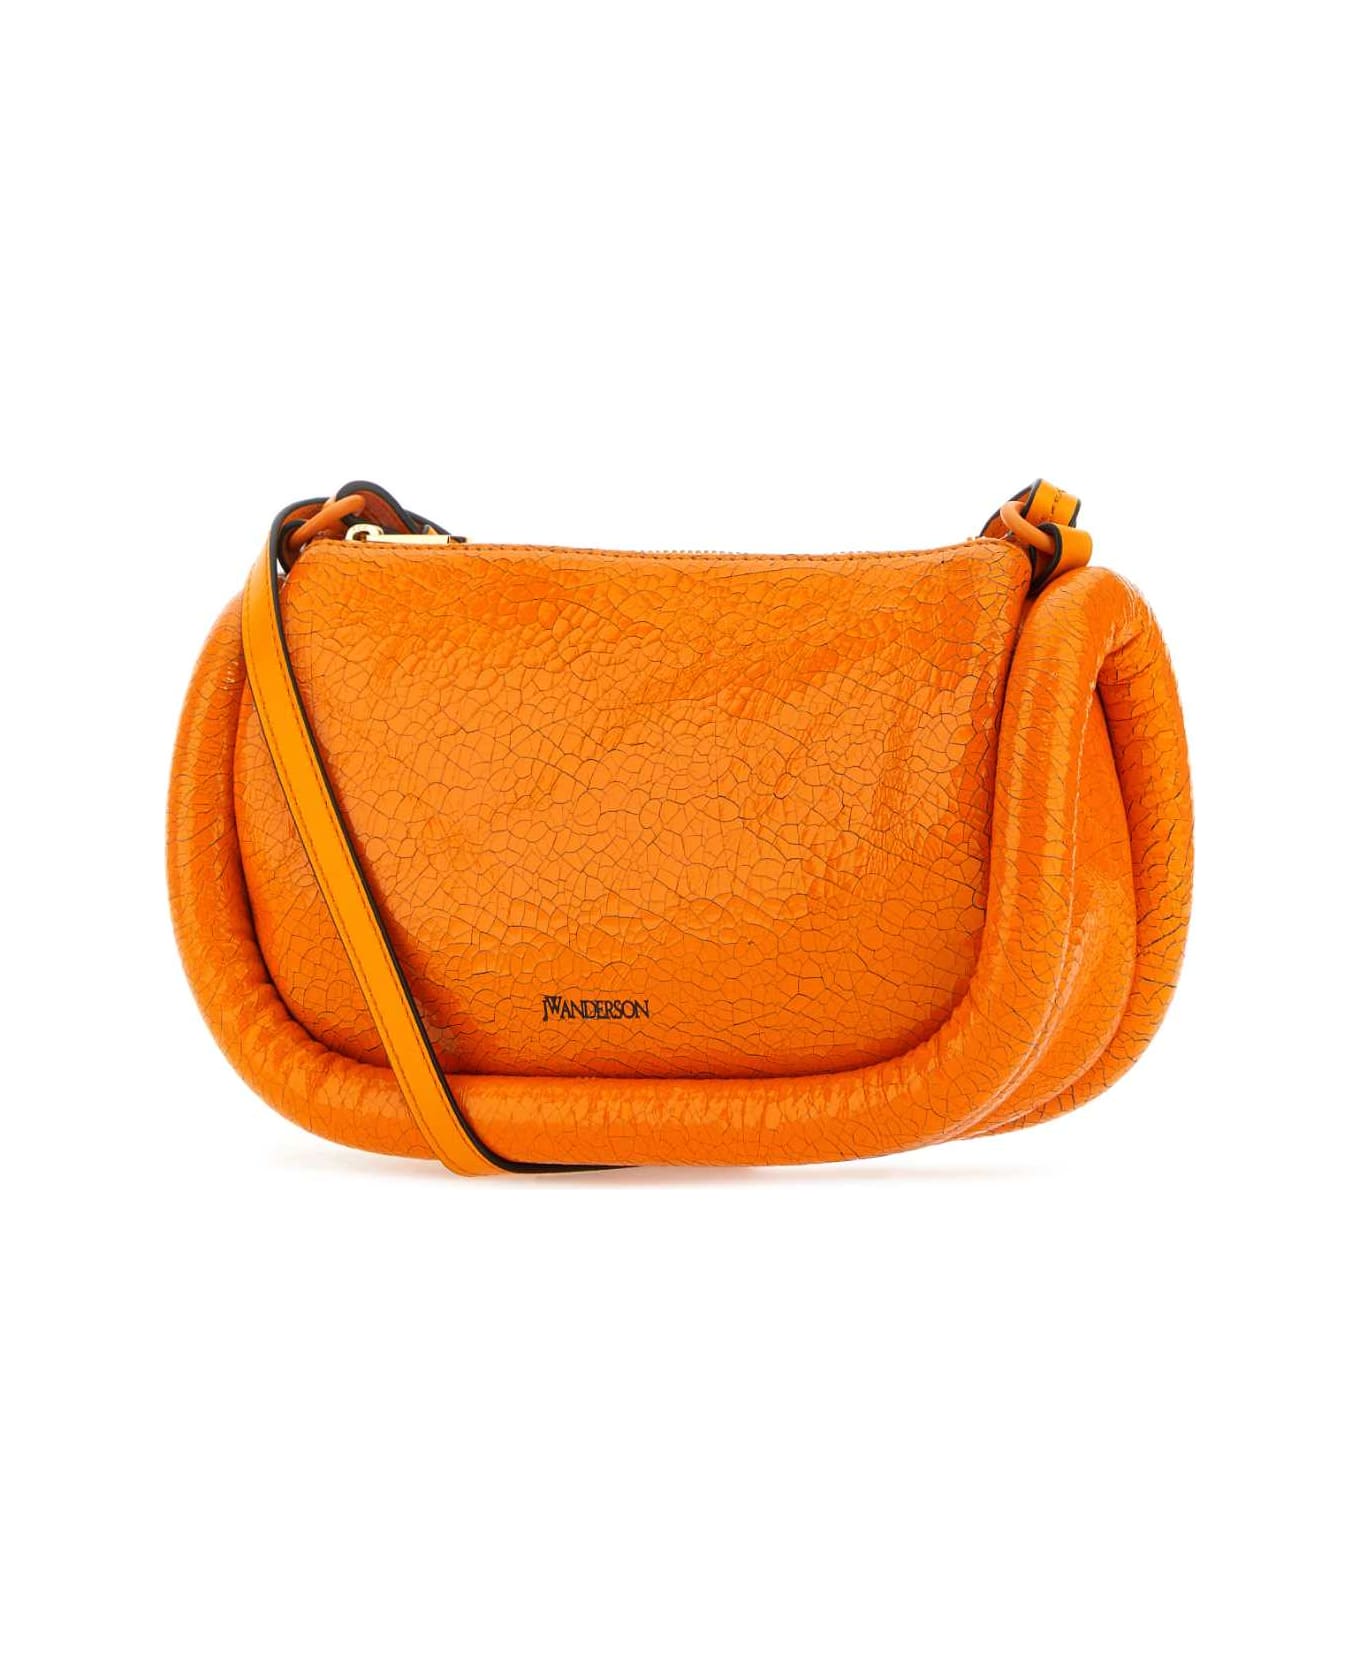 J.W. Anderson Fluo Orange Leather Shoulder Bag - NEONORANGE